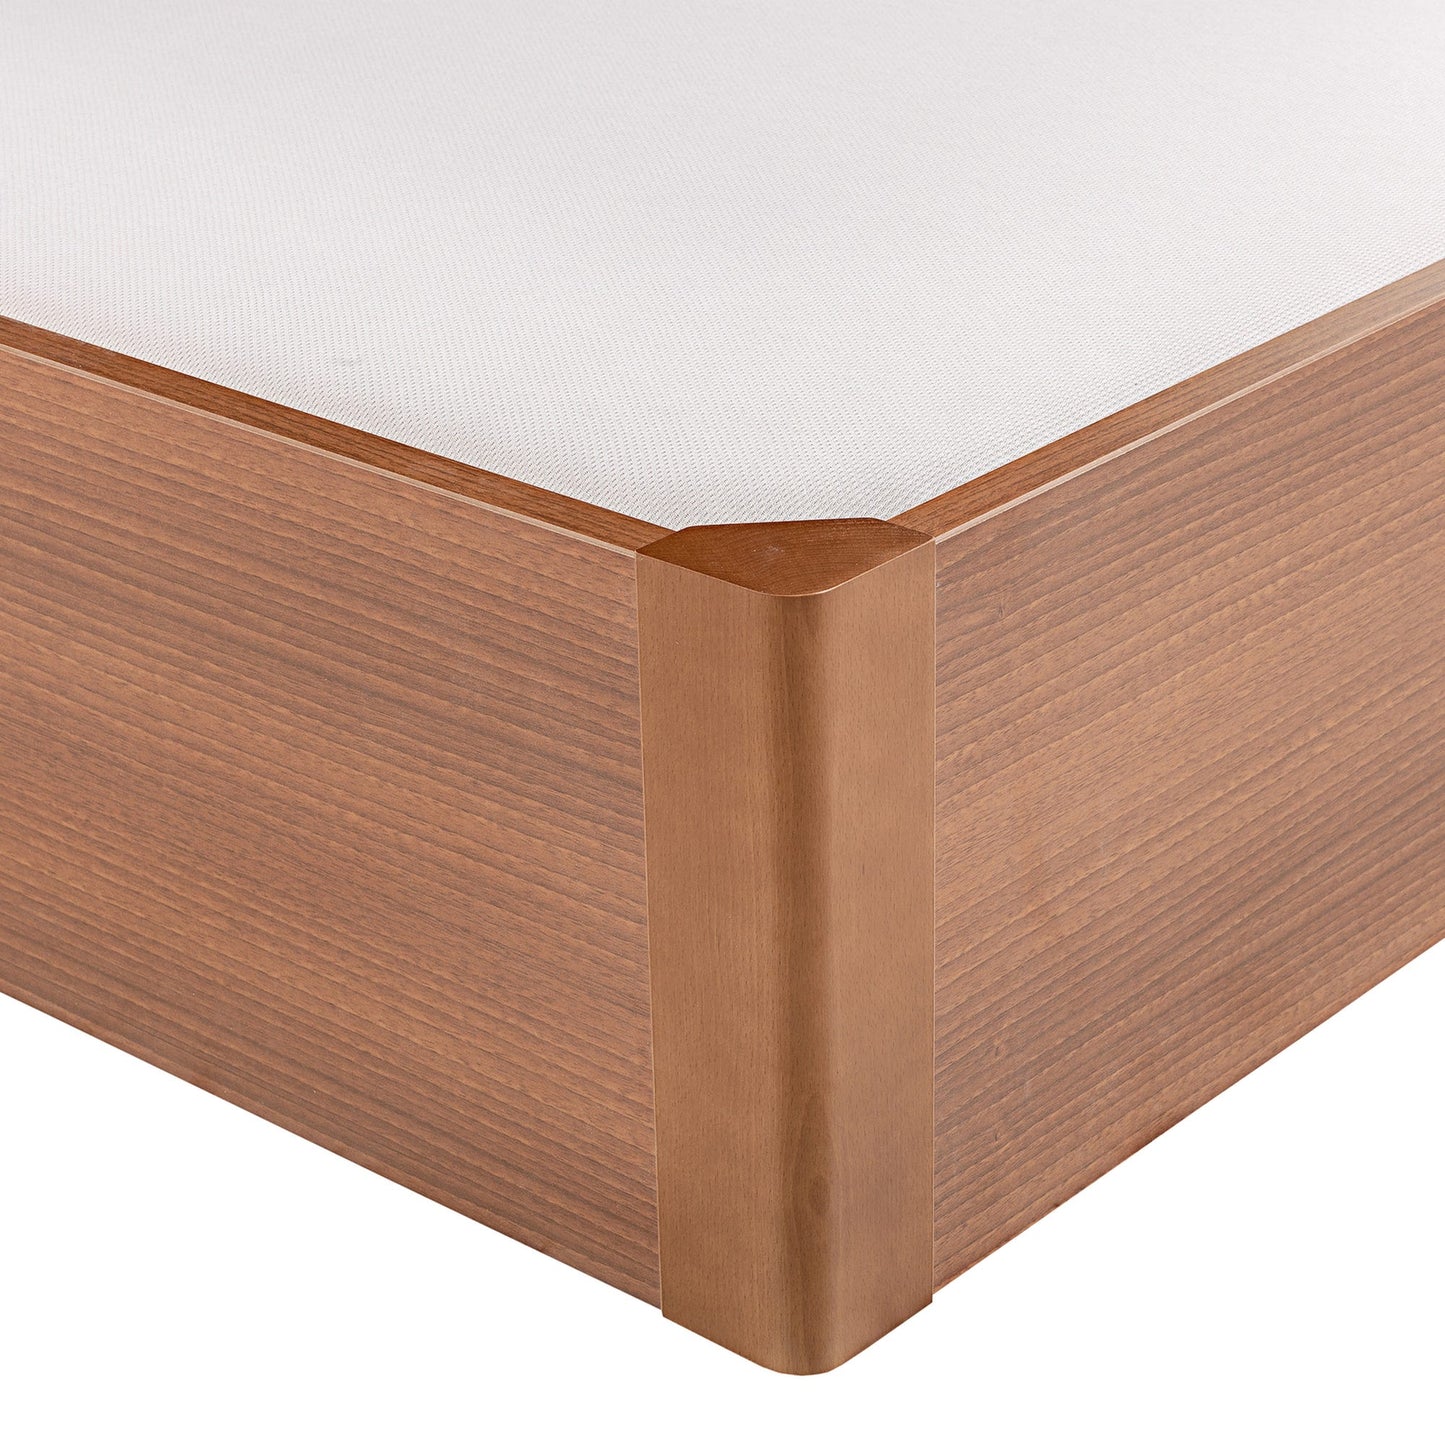 Canapé abatible de madera tapa única de color cerezo - DESIGN - 90x182